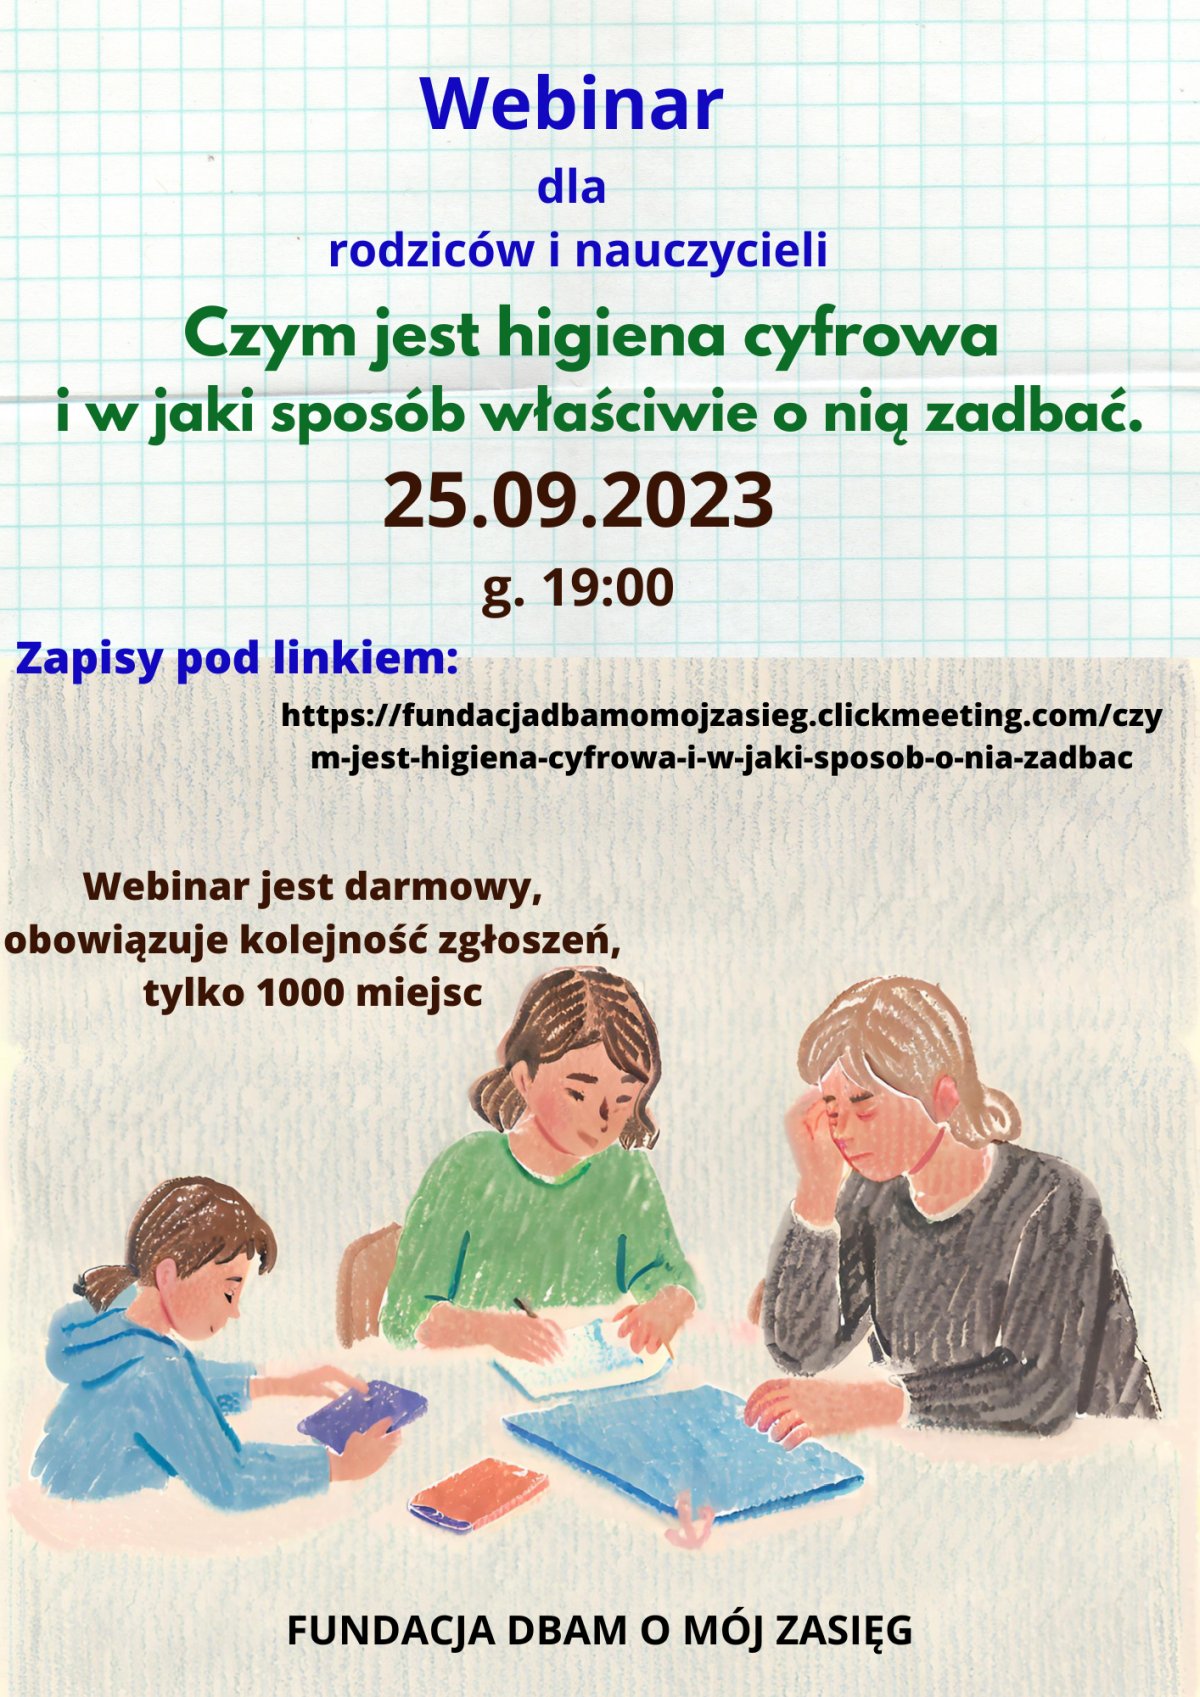 Plakat informujący o webinarze na temat higieny cyfrowej